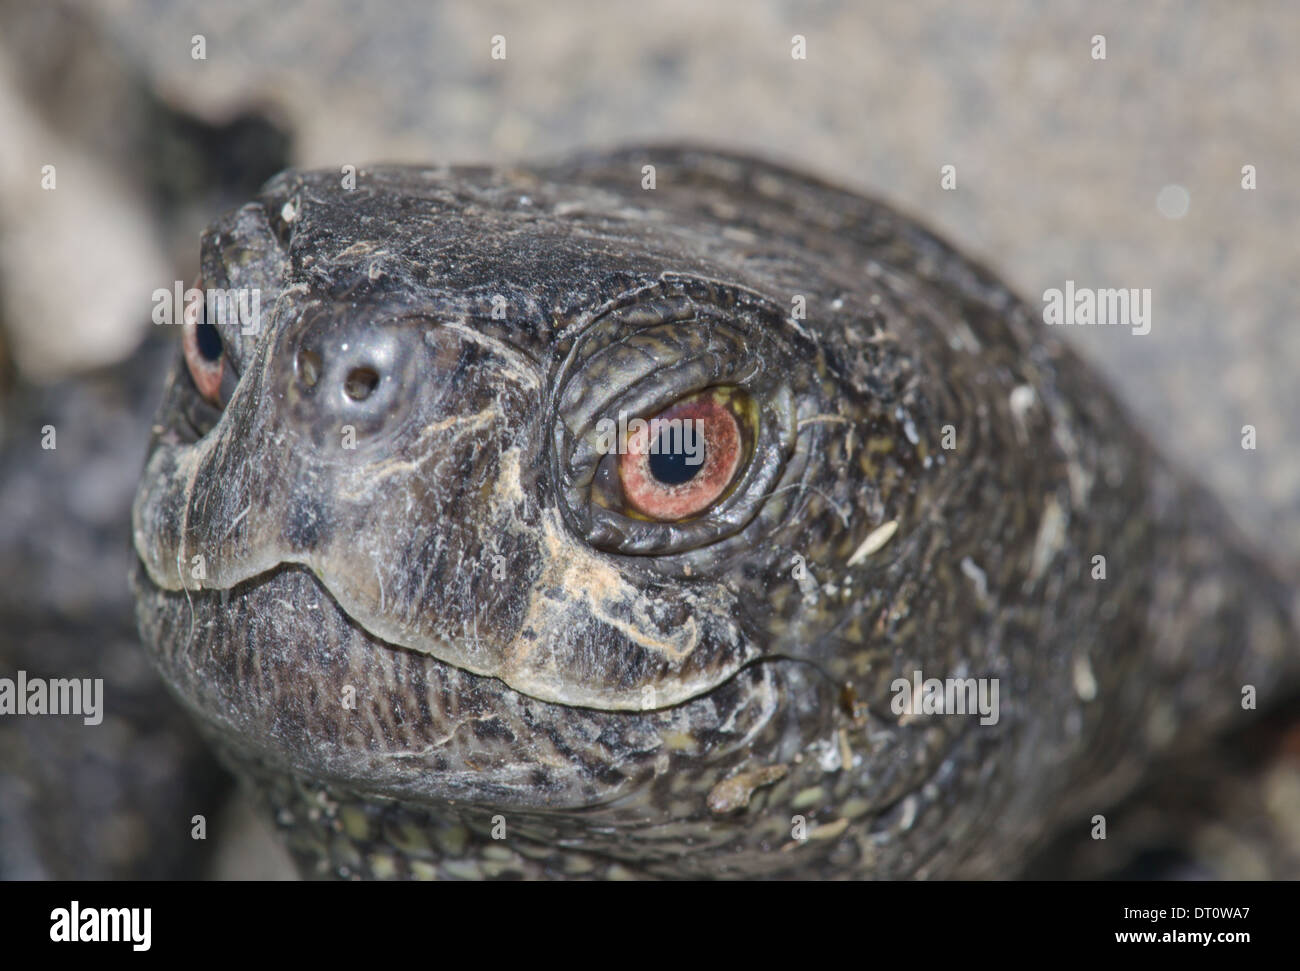 Unión estanque hembra tortuga close-up (Emys orbicularis) Foto de stock